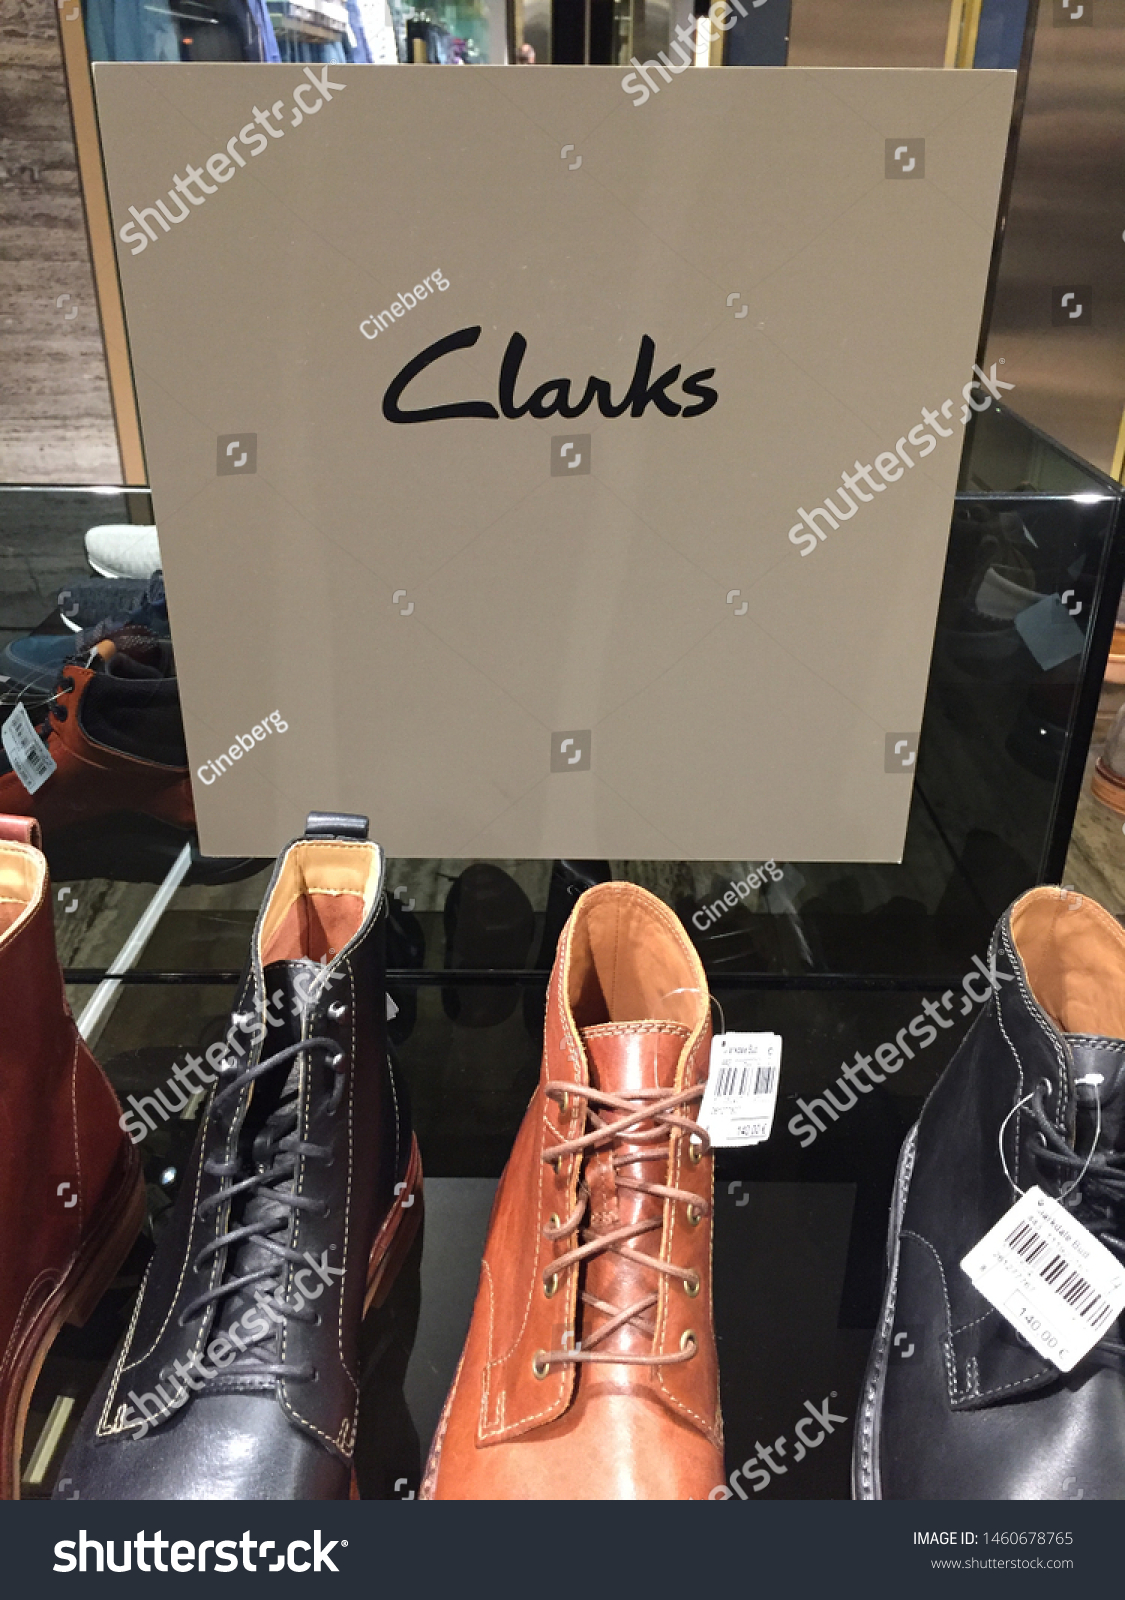 c&j clarks shoes